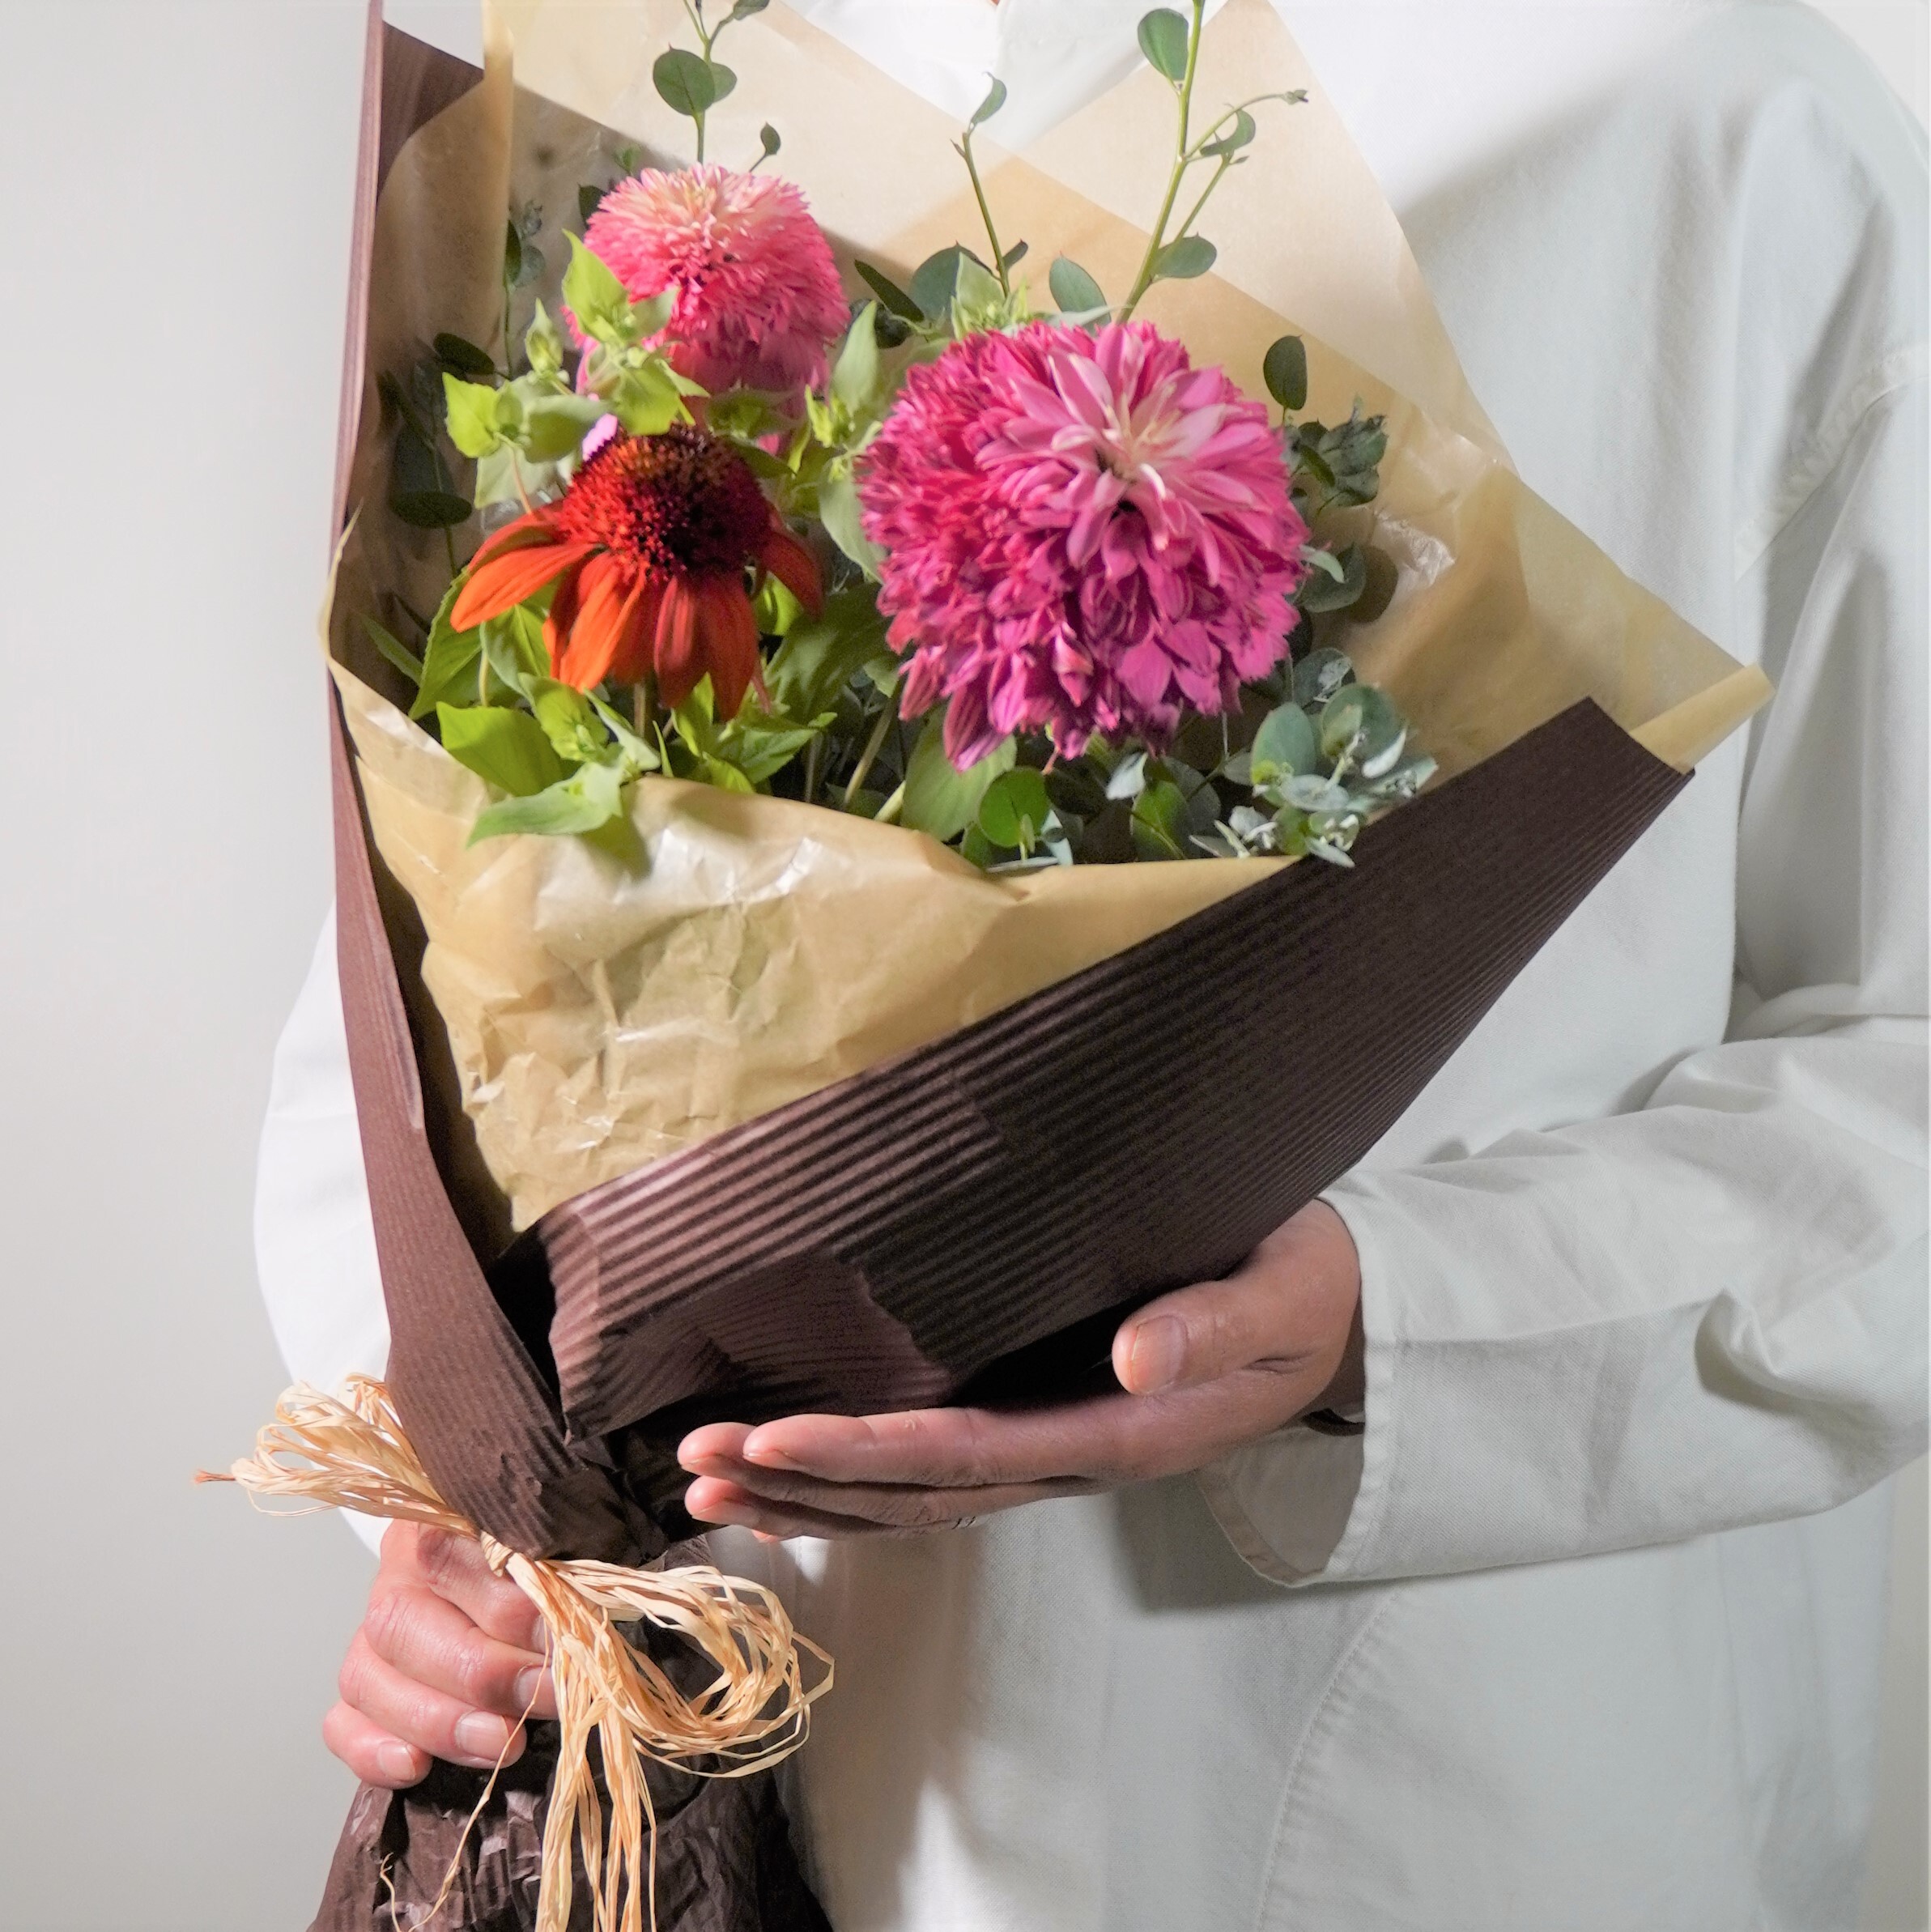 エキナセア ハーブmixブーケ よいはな Yoihana 最高品質のお花をお届けするネット通販